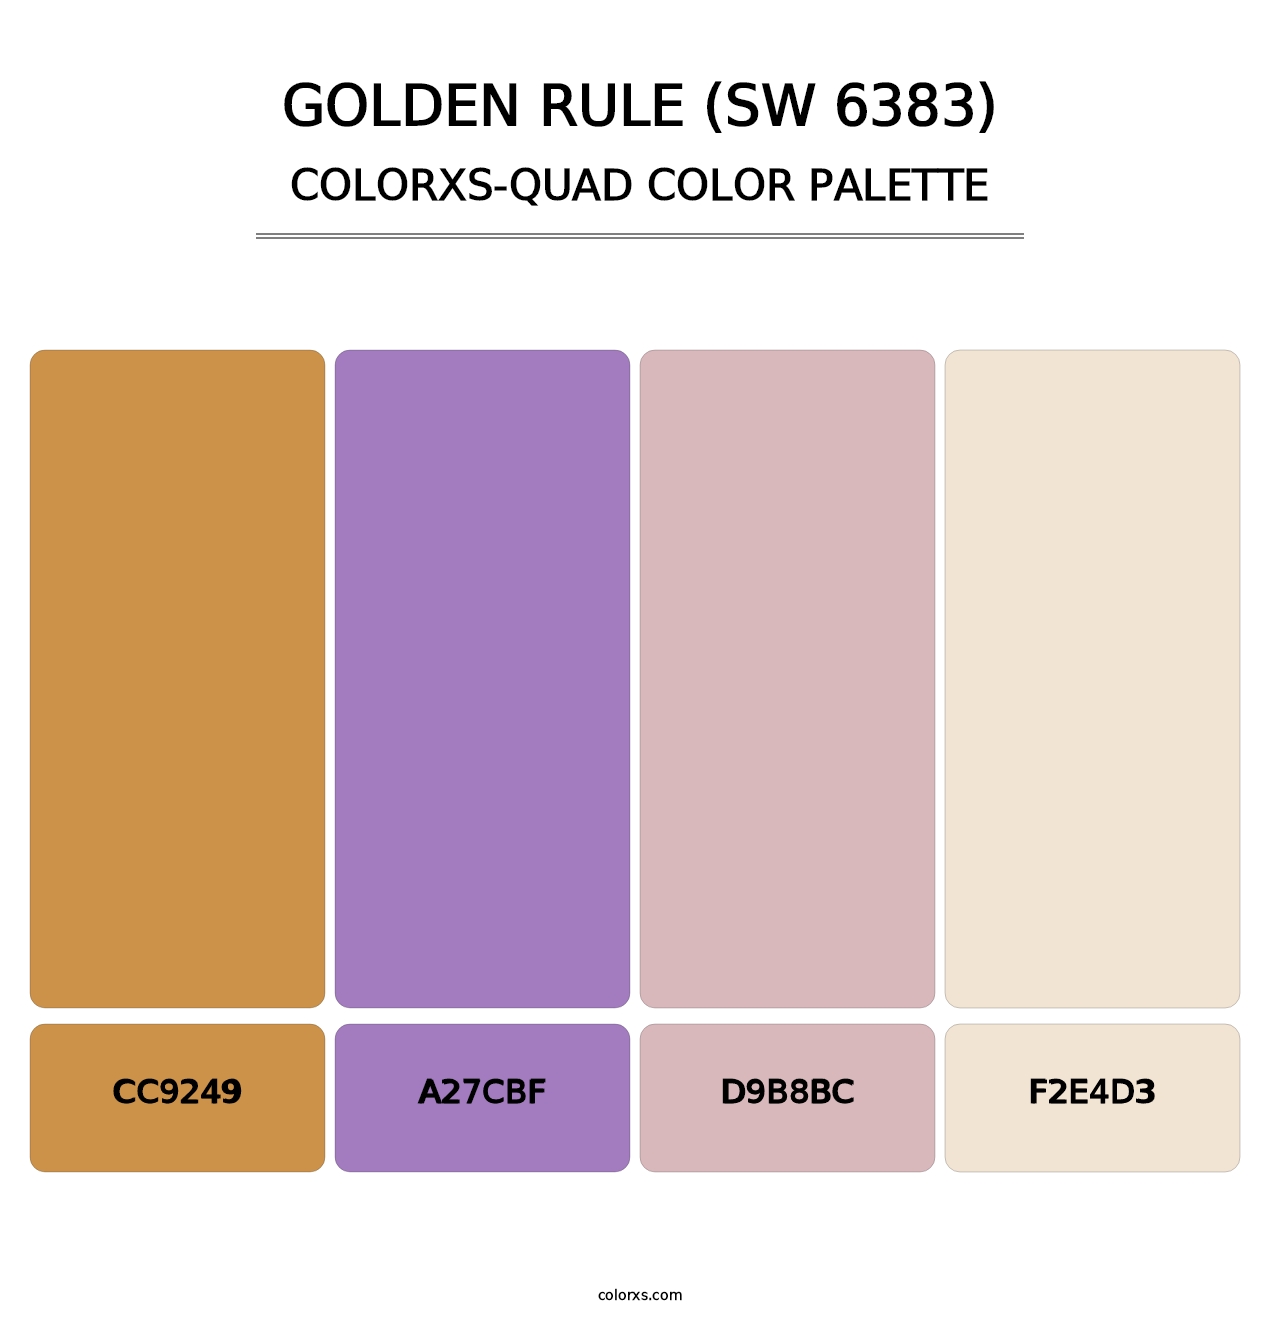 Golden Rule (SW 6383) - Colorxs Quad Palette